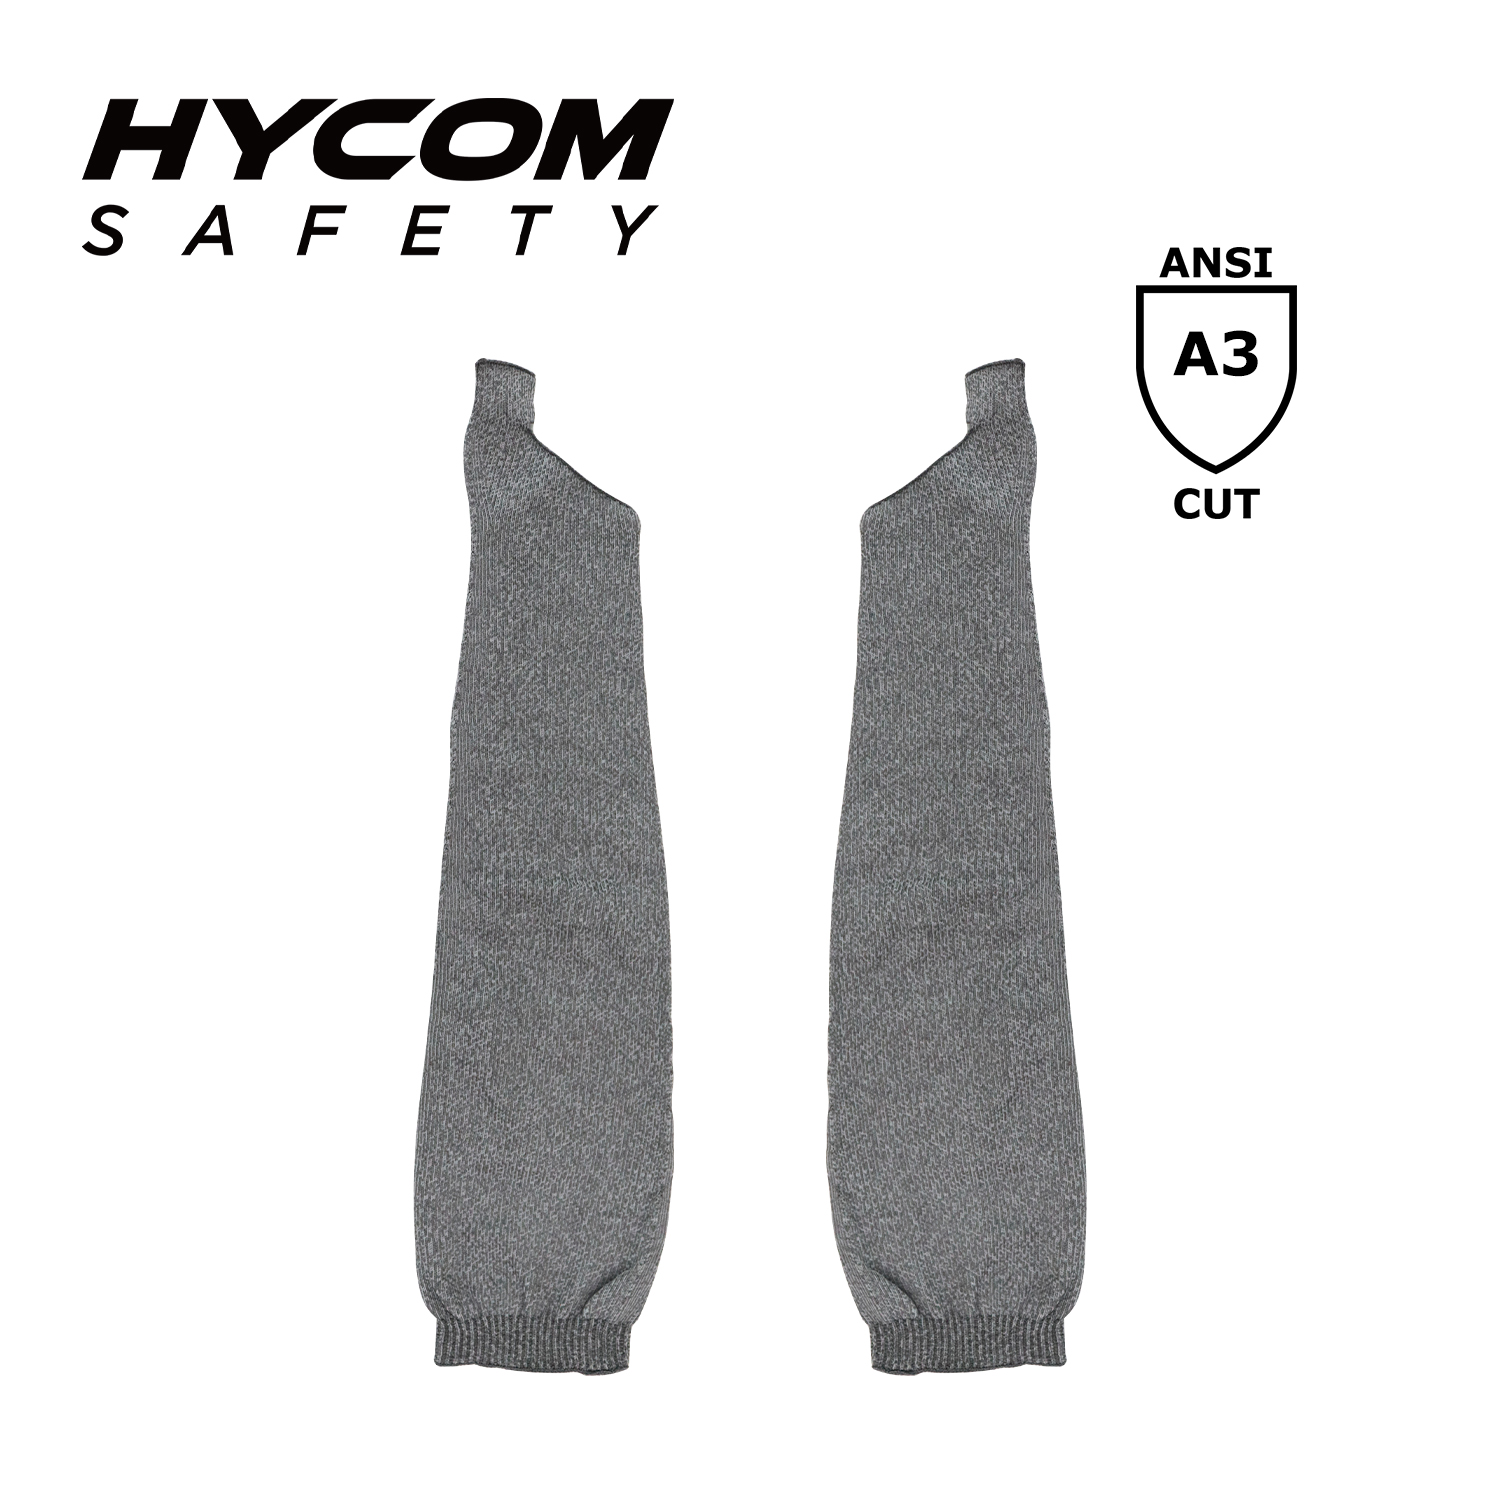 HYCOM Dreidimensional nahtlos gestrickte, schnittfeste Armschutzhülle der Schnittstufe 3 für Arbeitssicherheit